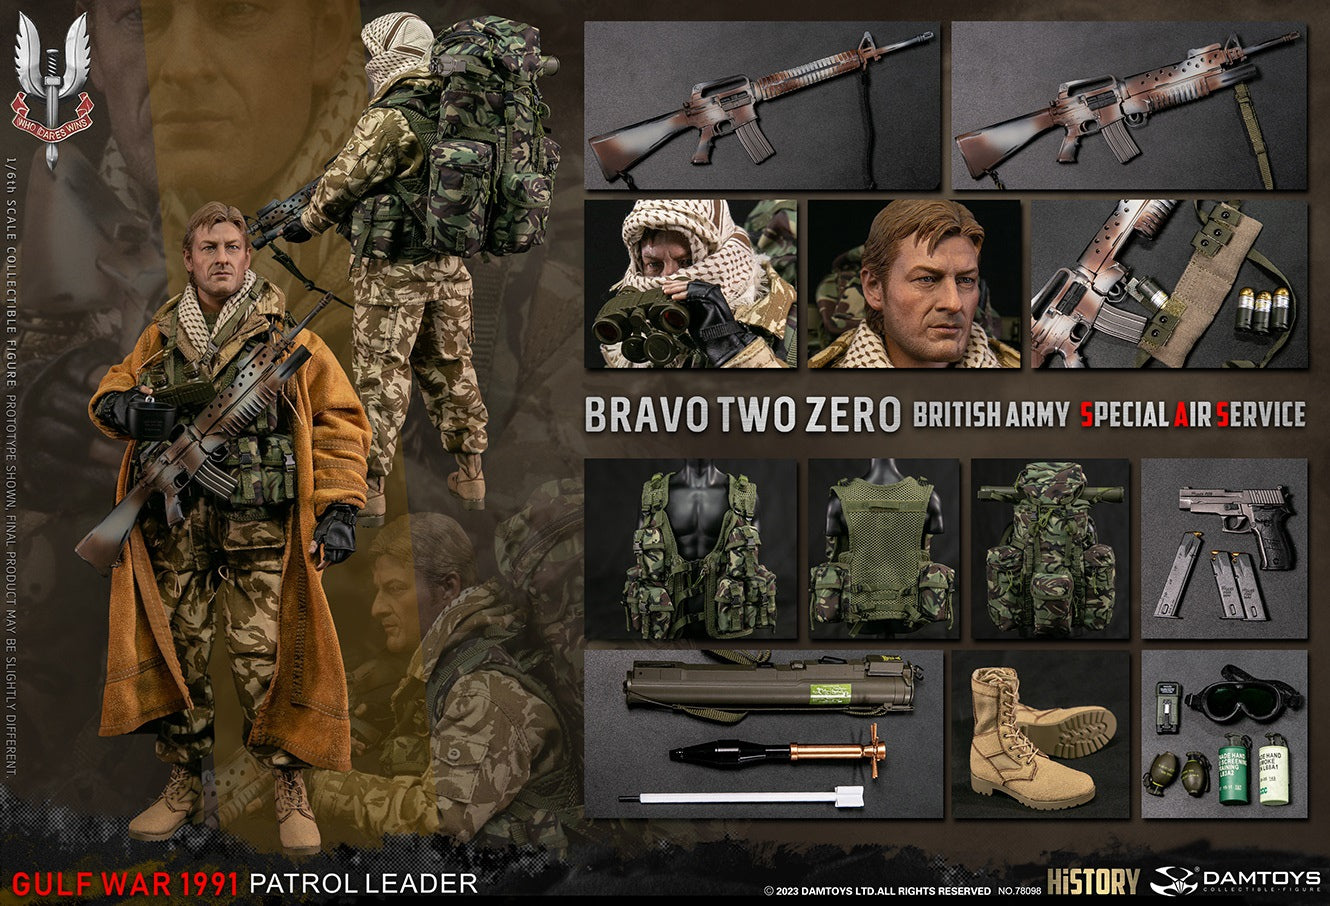 Damtoys - Elite Series 78098 - British Army Special Air Service (SAS) Patrol Leader "Bravo Two Zero" (1/6 Scale) - Marvelous Toys